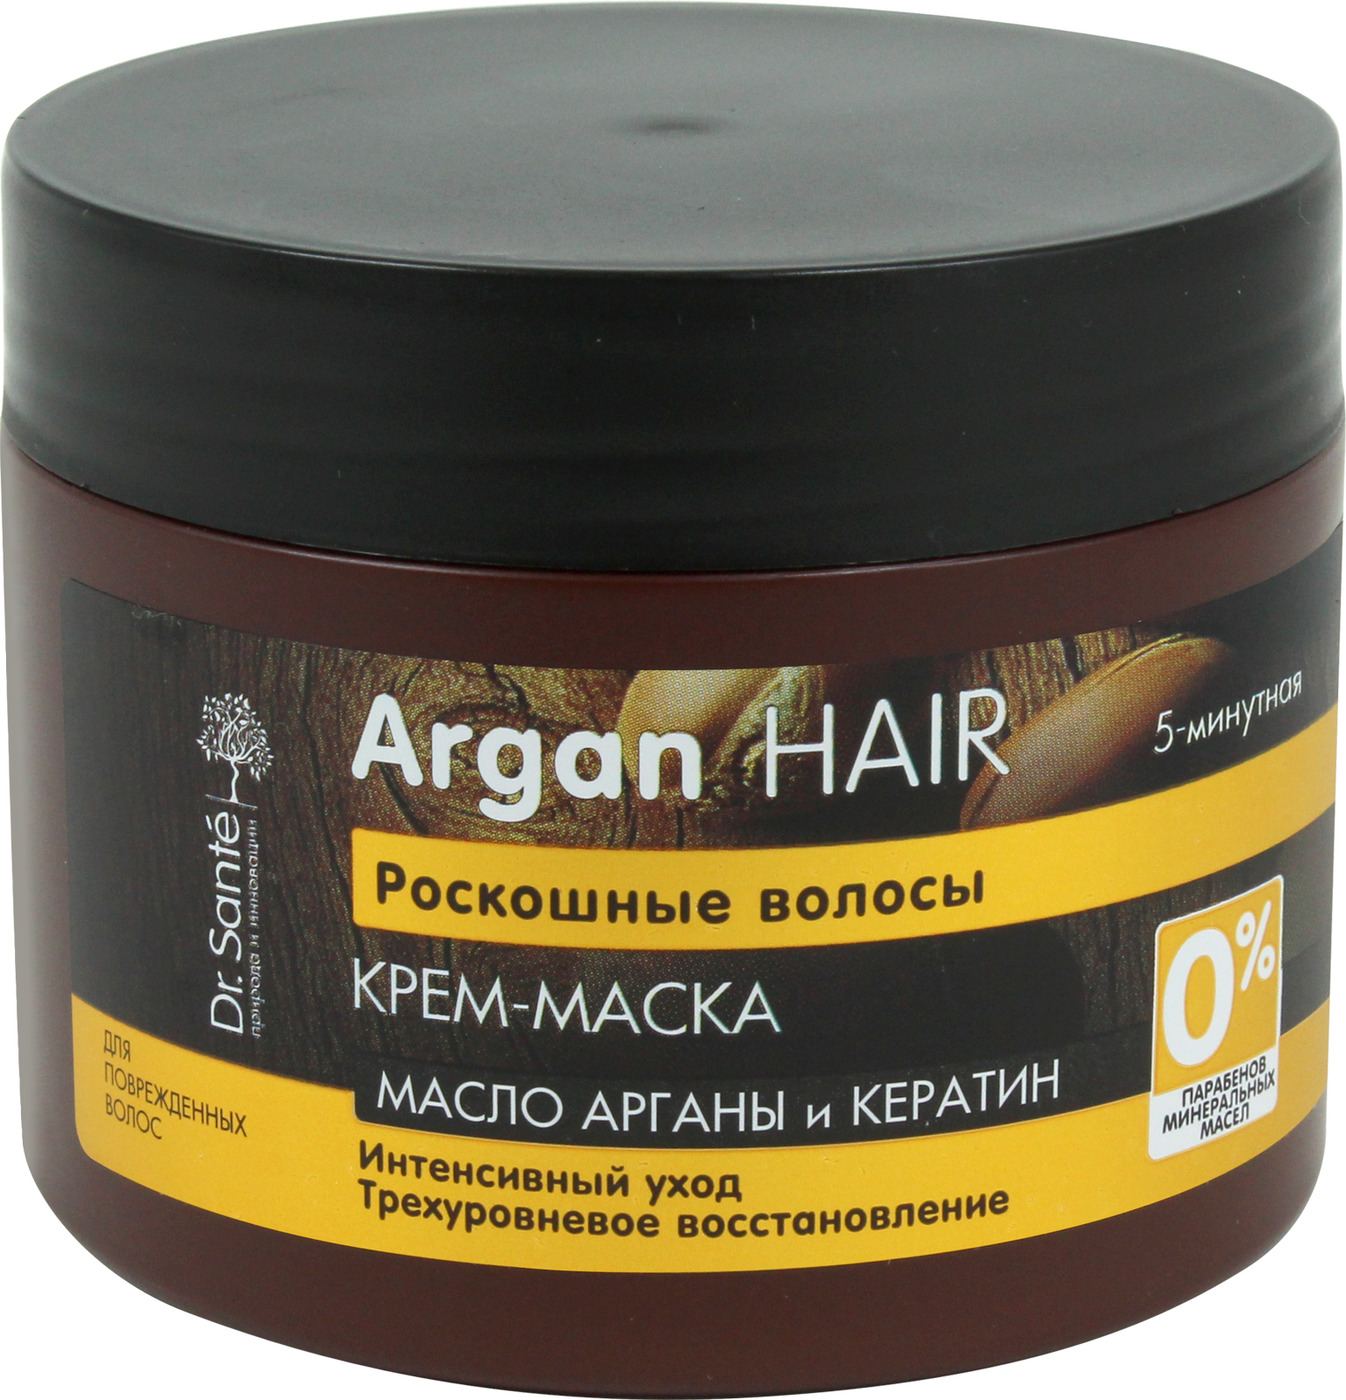 Маска для волос с арганой. Доктор Сантэ (Argan hair маска крем. 300мл д/волос ) эльфа НПО-Украина. Маска для волос для волос аргани кератин Хеар. Маска для волос Argan hair с кератином. Витекс маска с кератином.